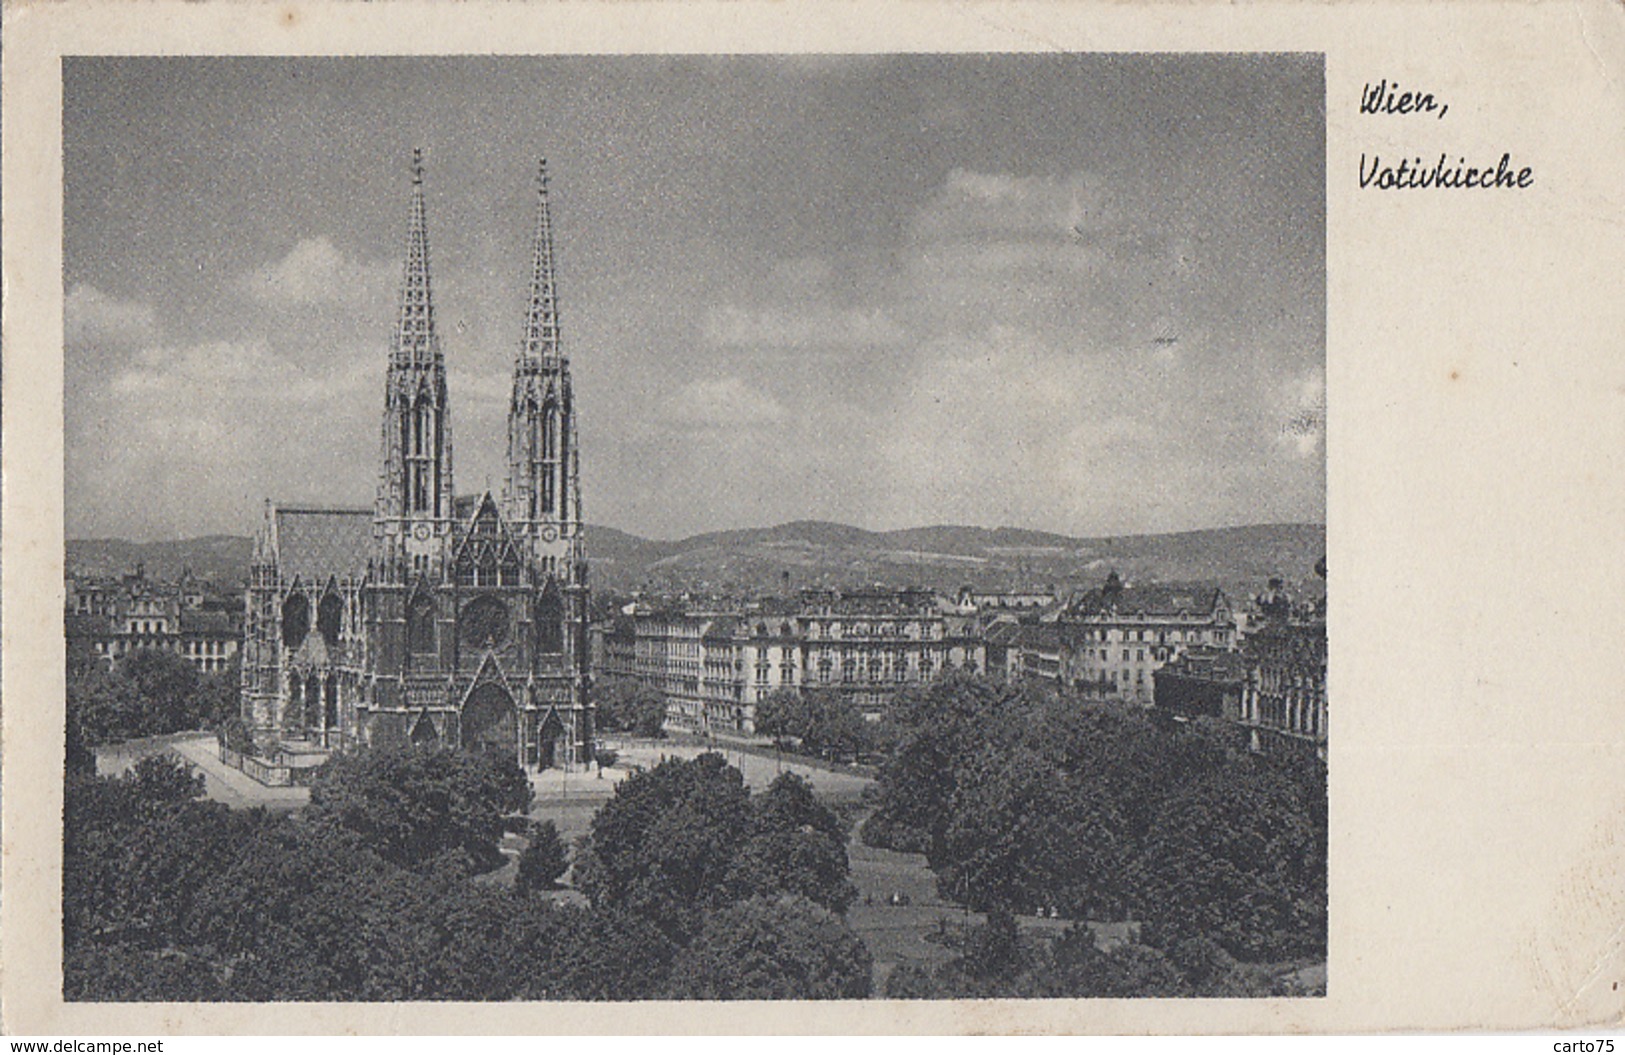 Autriche - Wien - Votivkirche - Postmarked Poste Aux Armées 1949 - Au Château Du Pré D'Auge La Boissière 14 - Churches